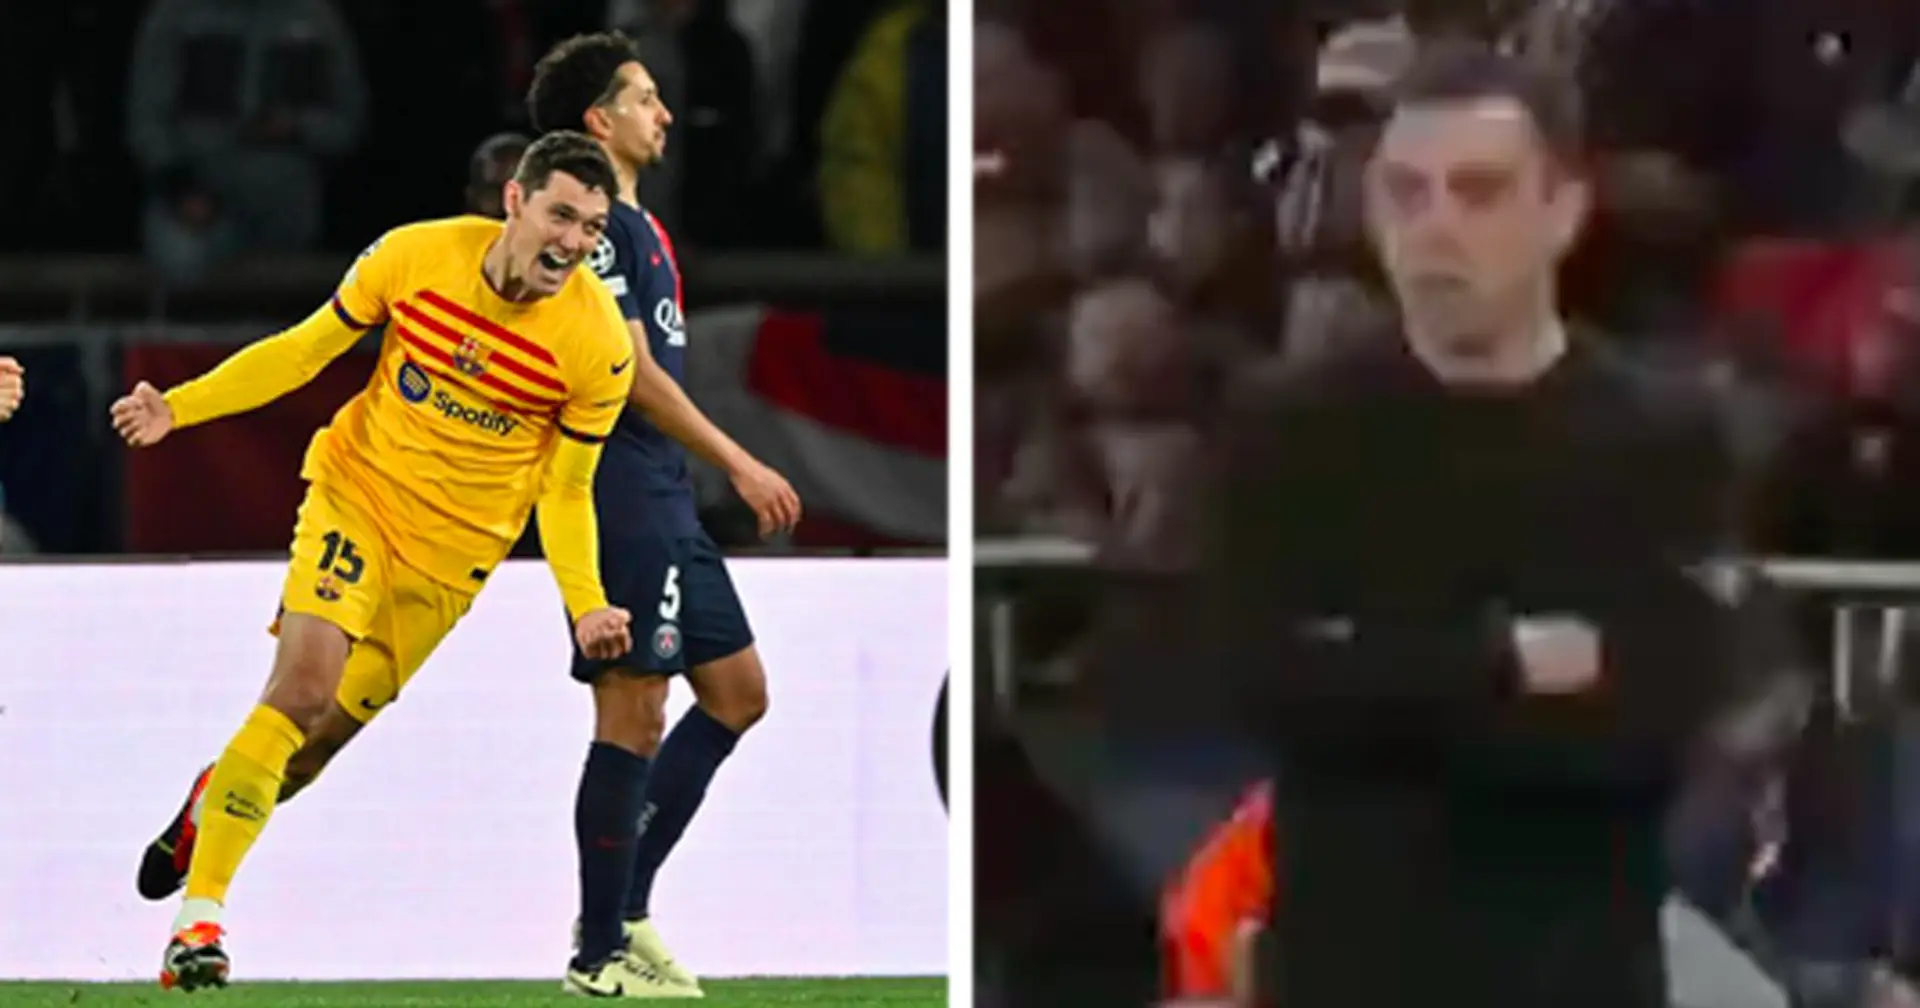 La réaction épique de Xavi au but de la victoire du Barça contre le PSG filmée